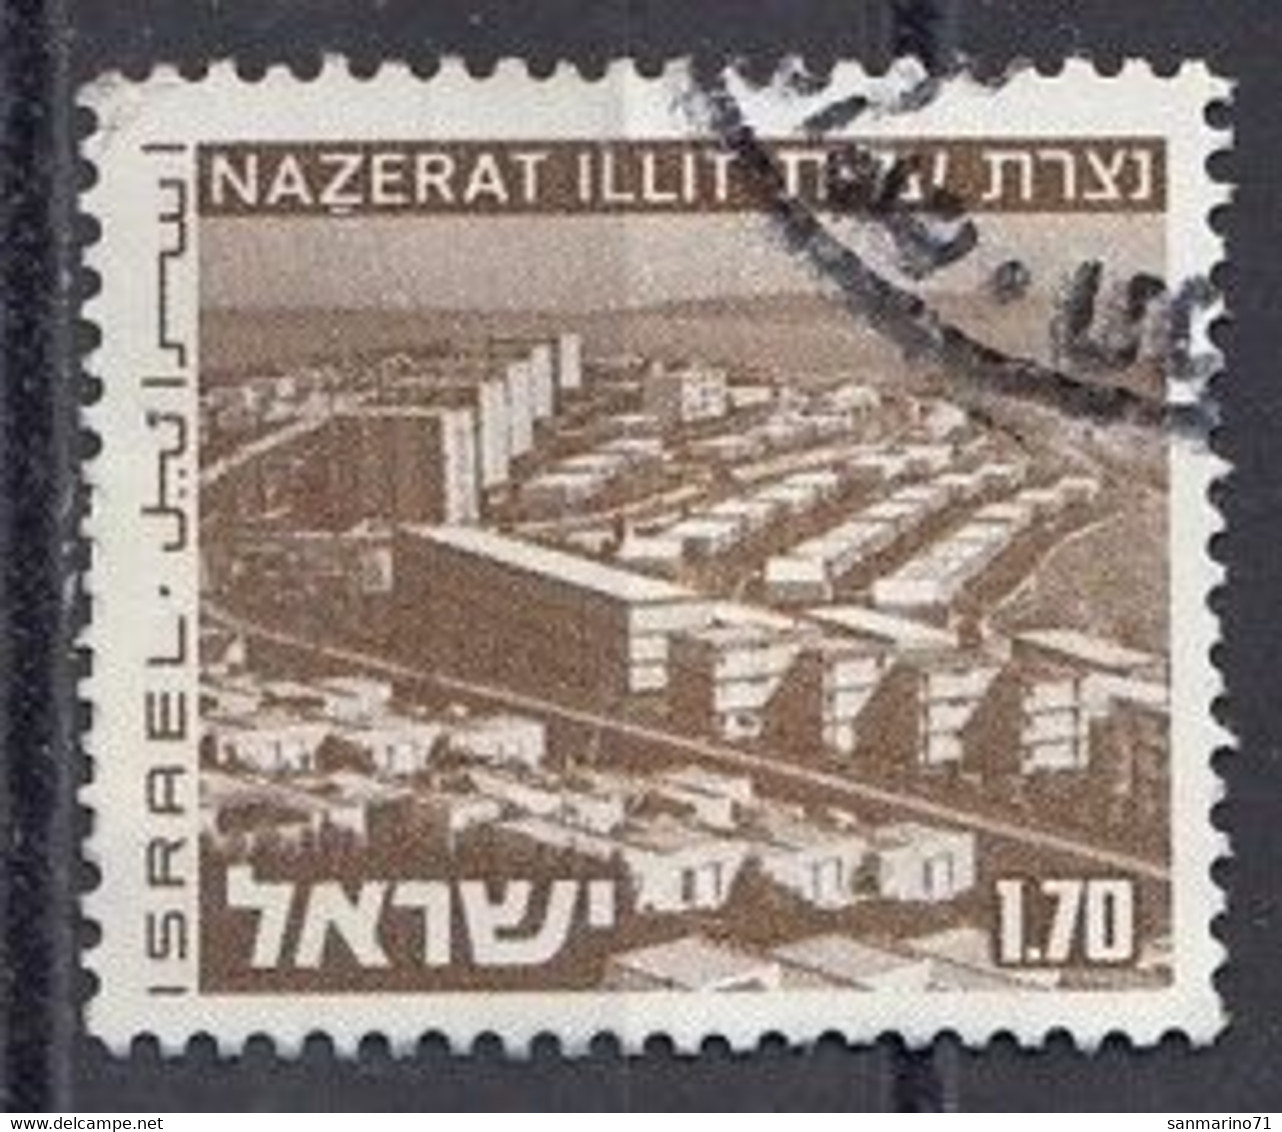 ISRAEL 646,used,falc Hinged - Usati (senza Tab)